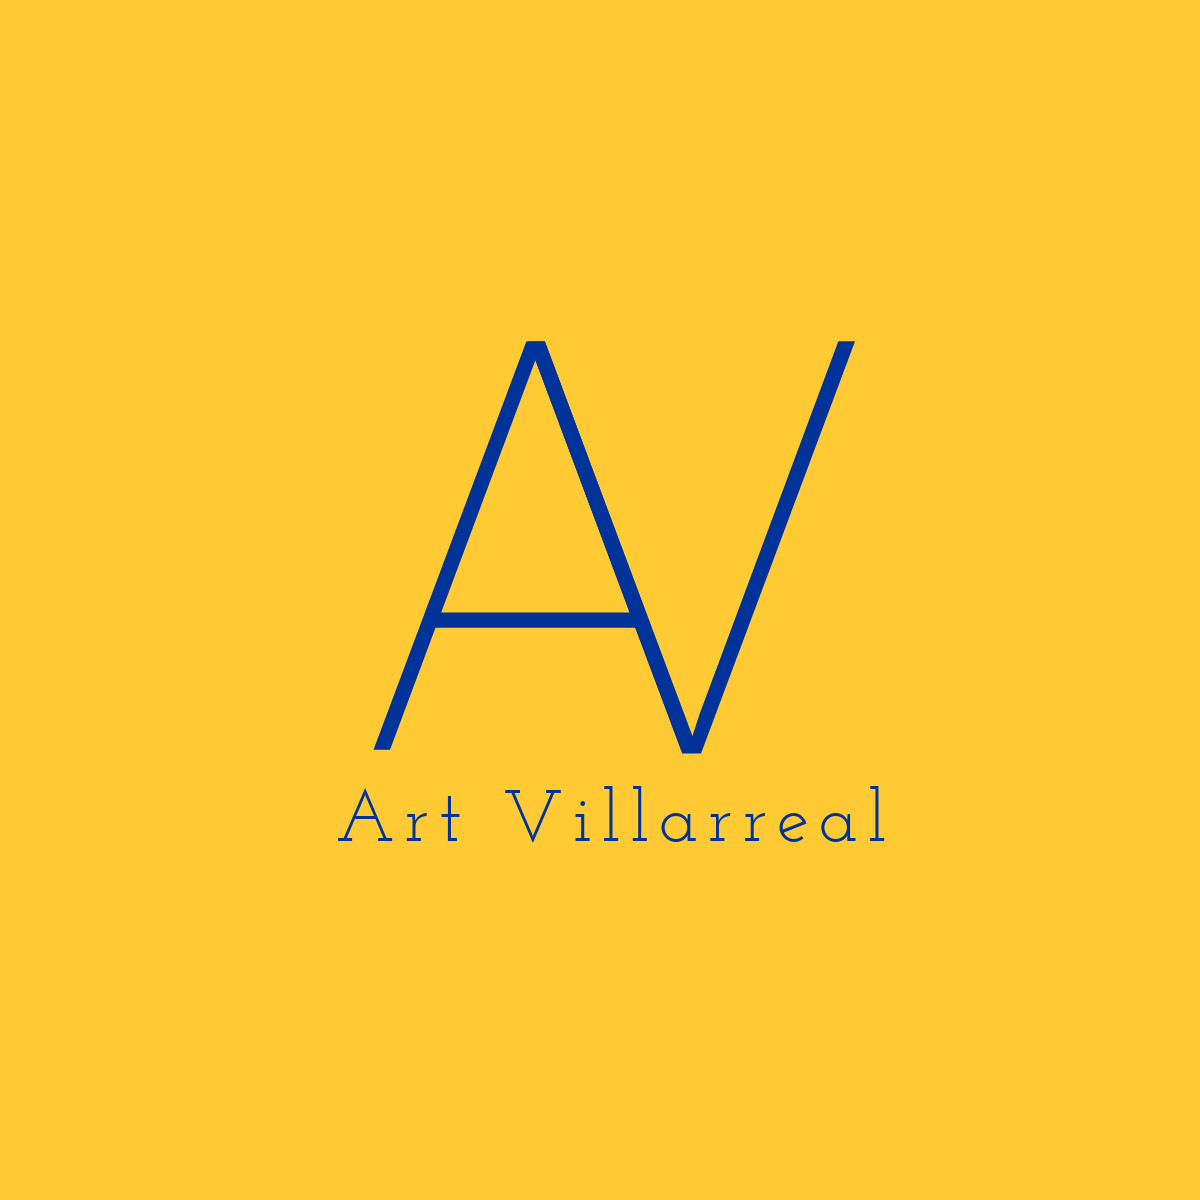 Art Villarreal [dot] com